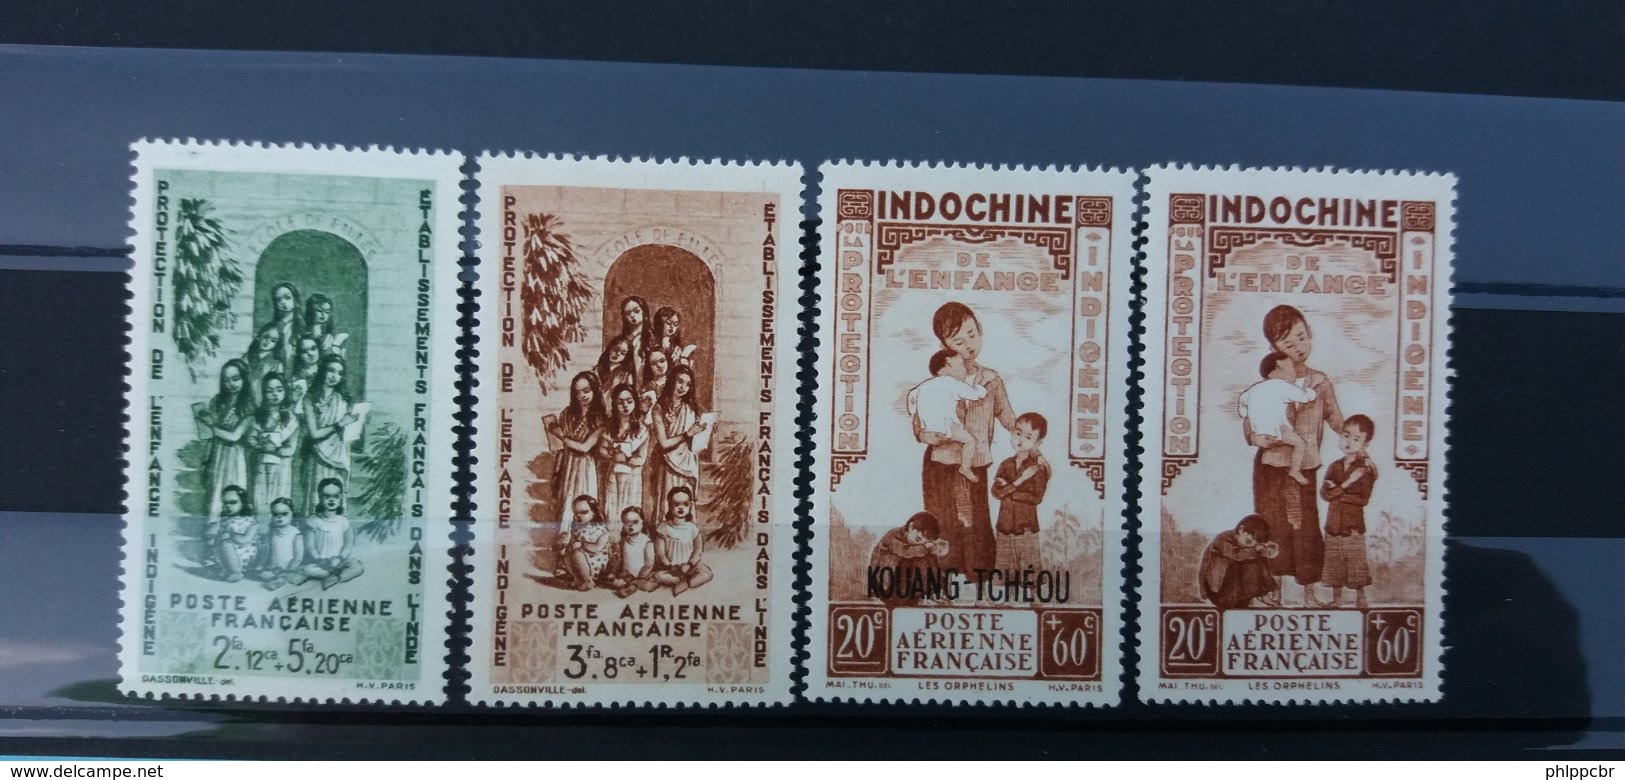 Importante collection Colonies - Séries coloniales - Grande majorité ** - Plus de 2900 € de cote Yvert